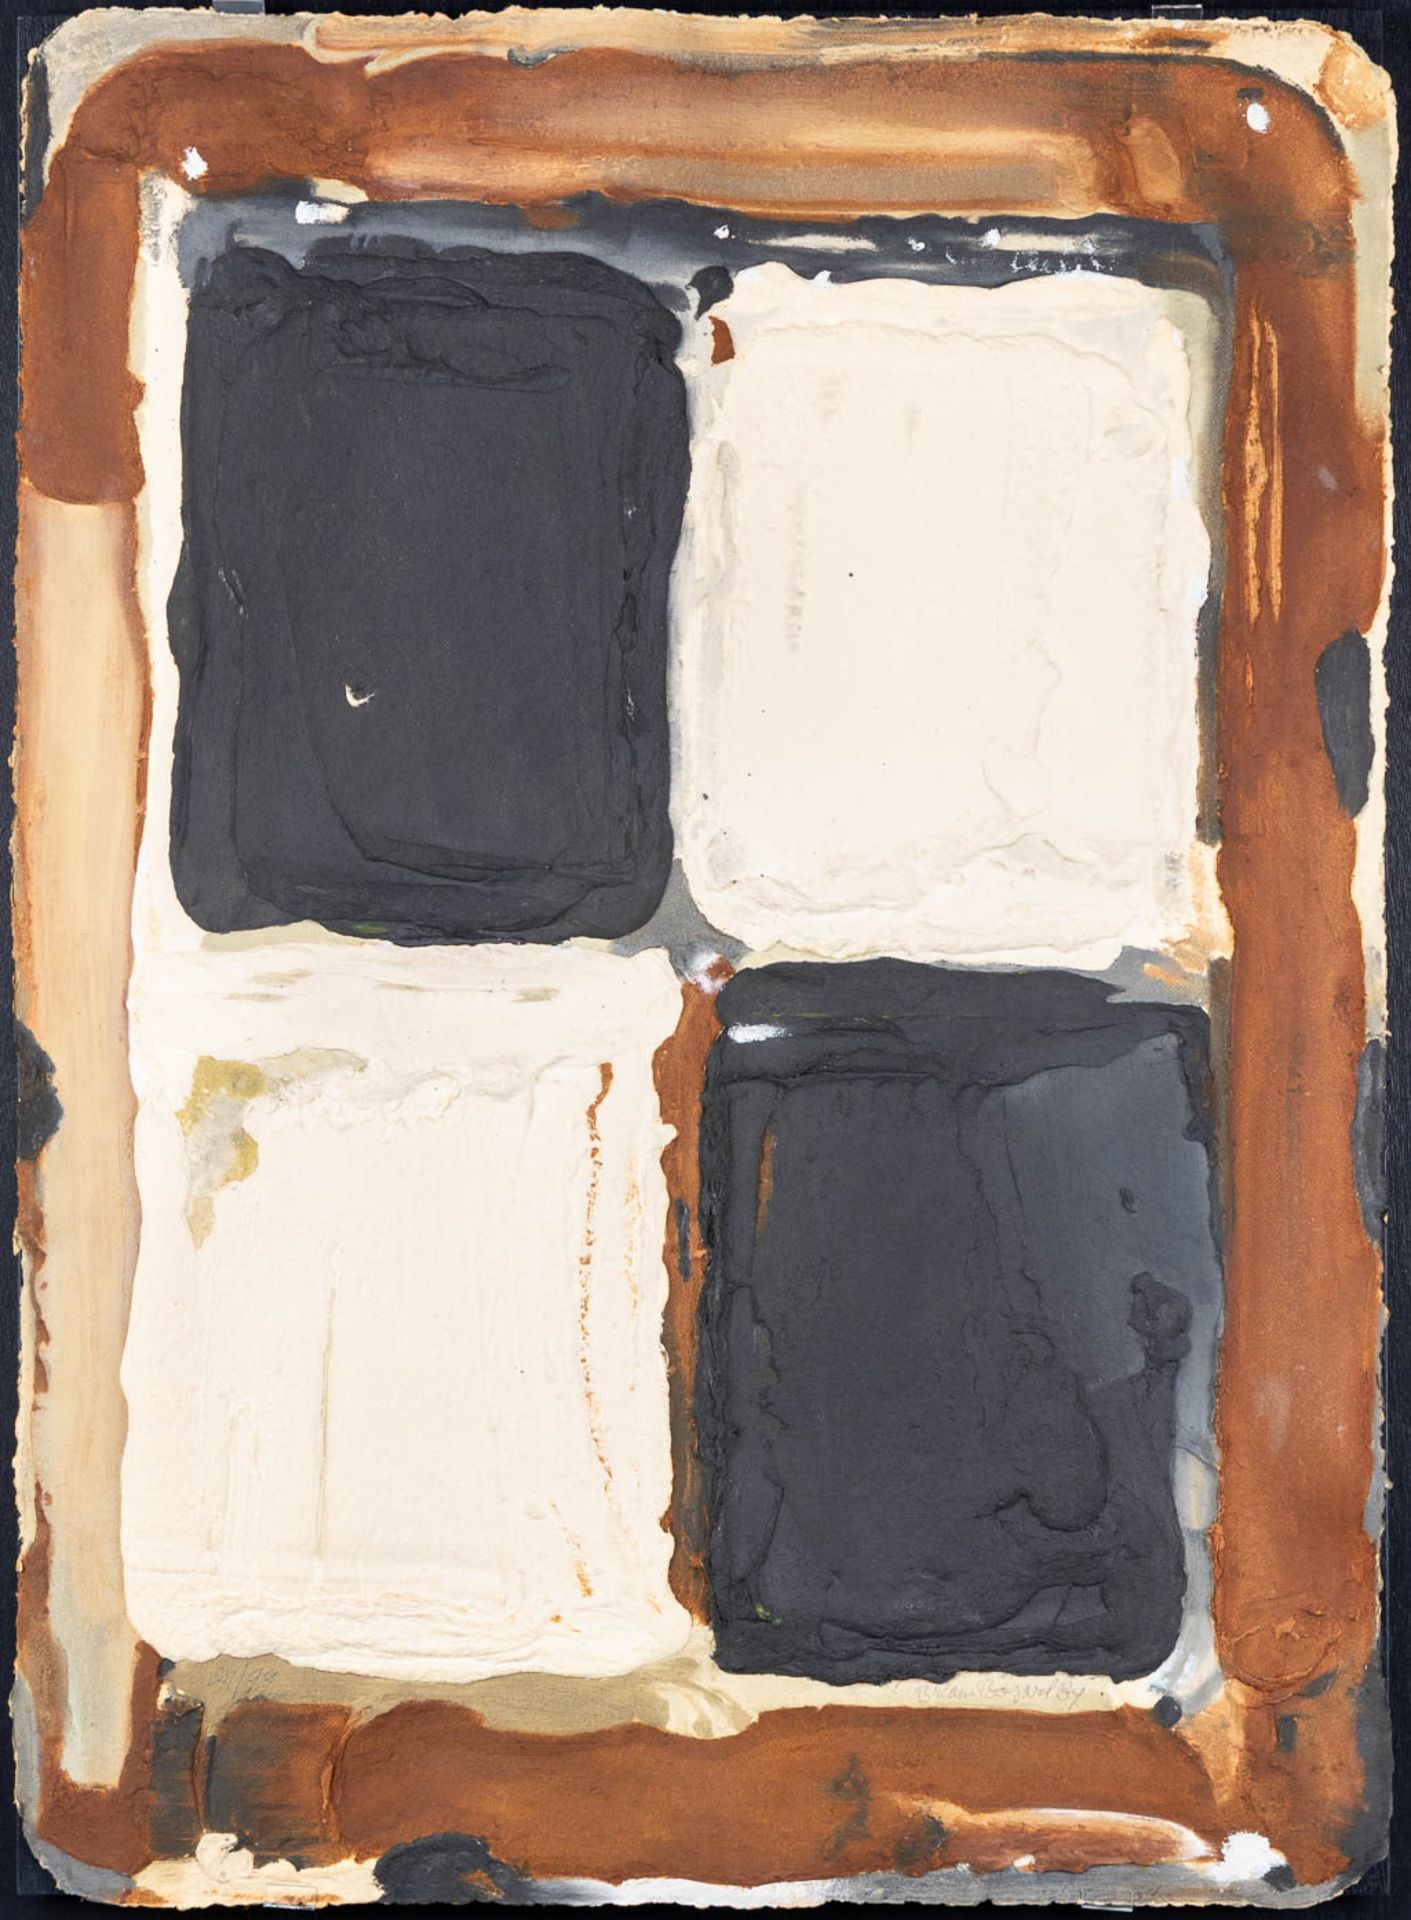 Bram BOGART (1921-2012) 'Brown, Black, White' aquagravure. 1989. (W:79 x H:110 cm)